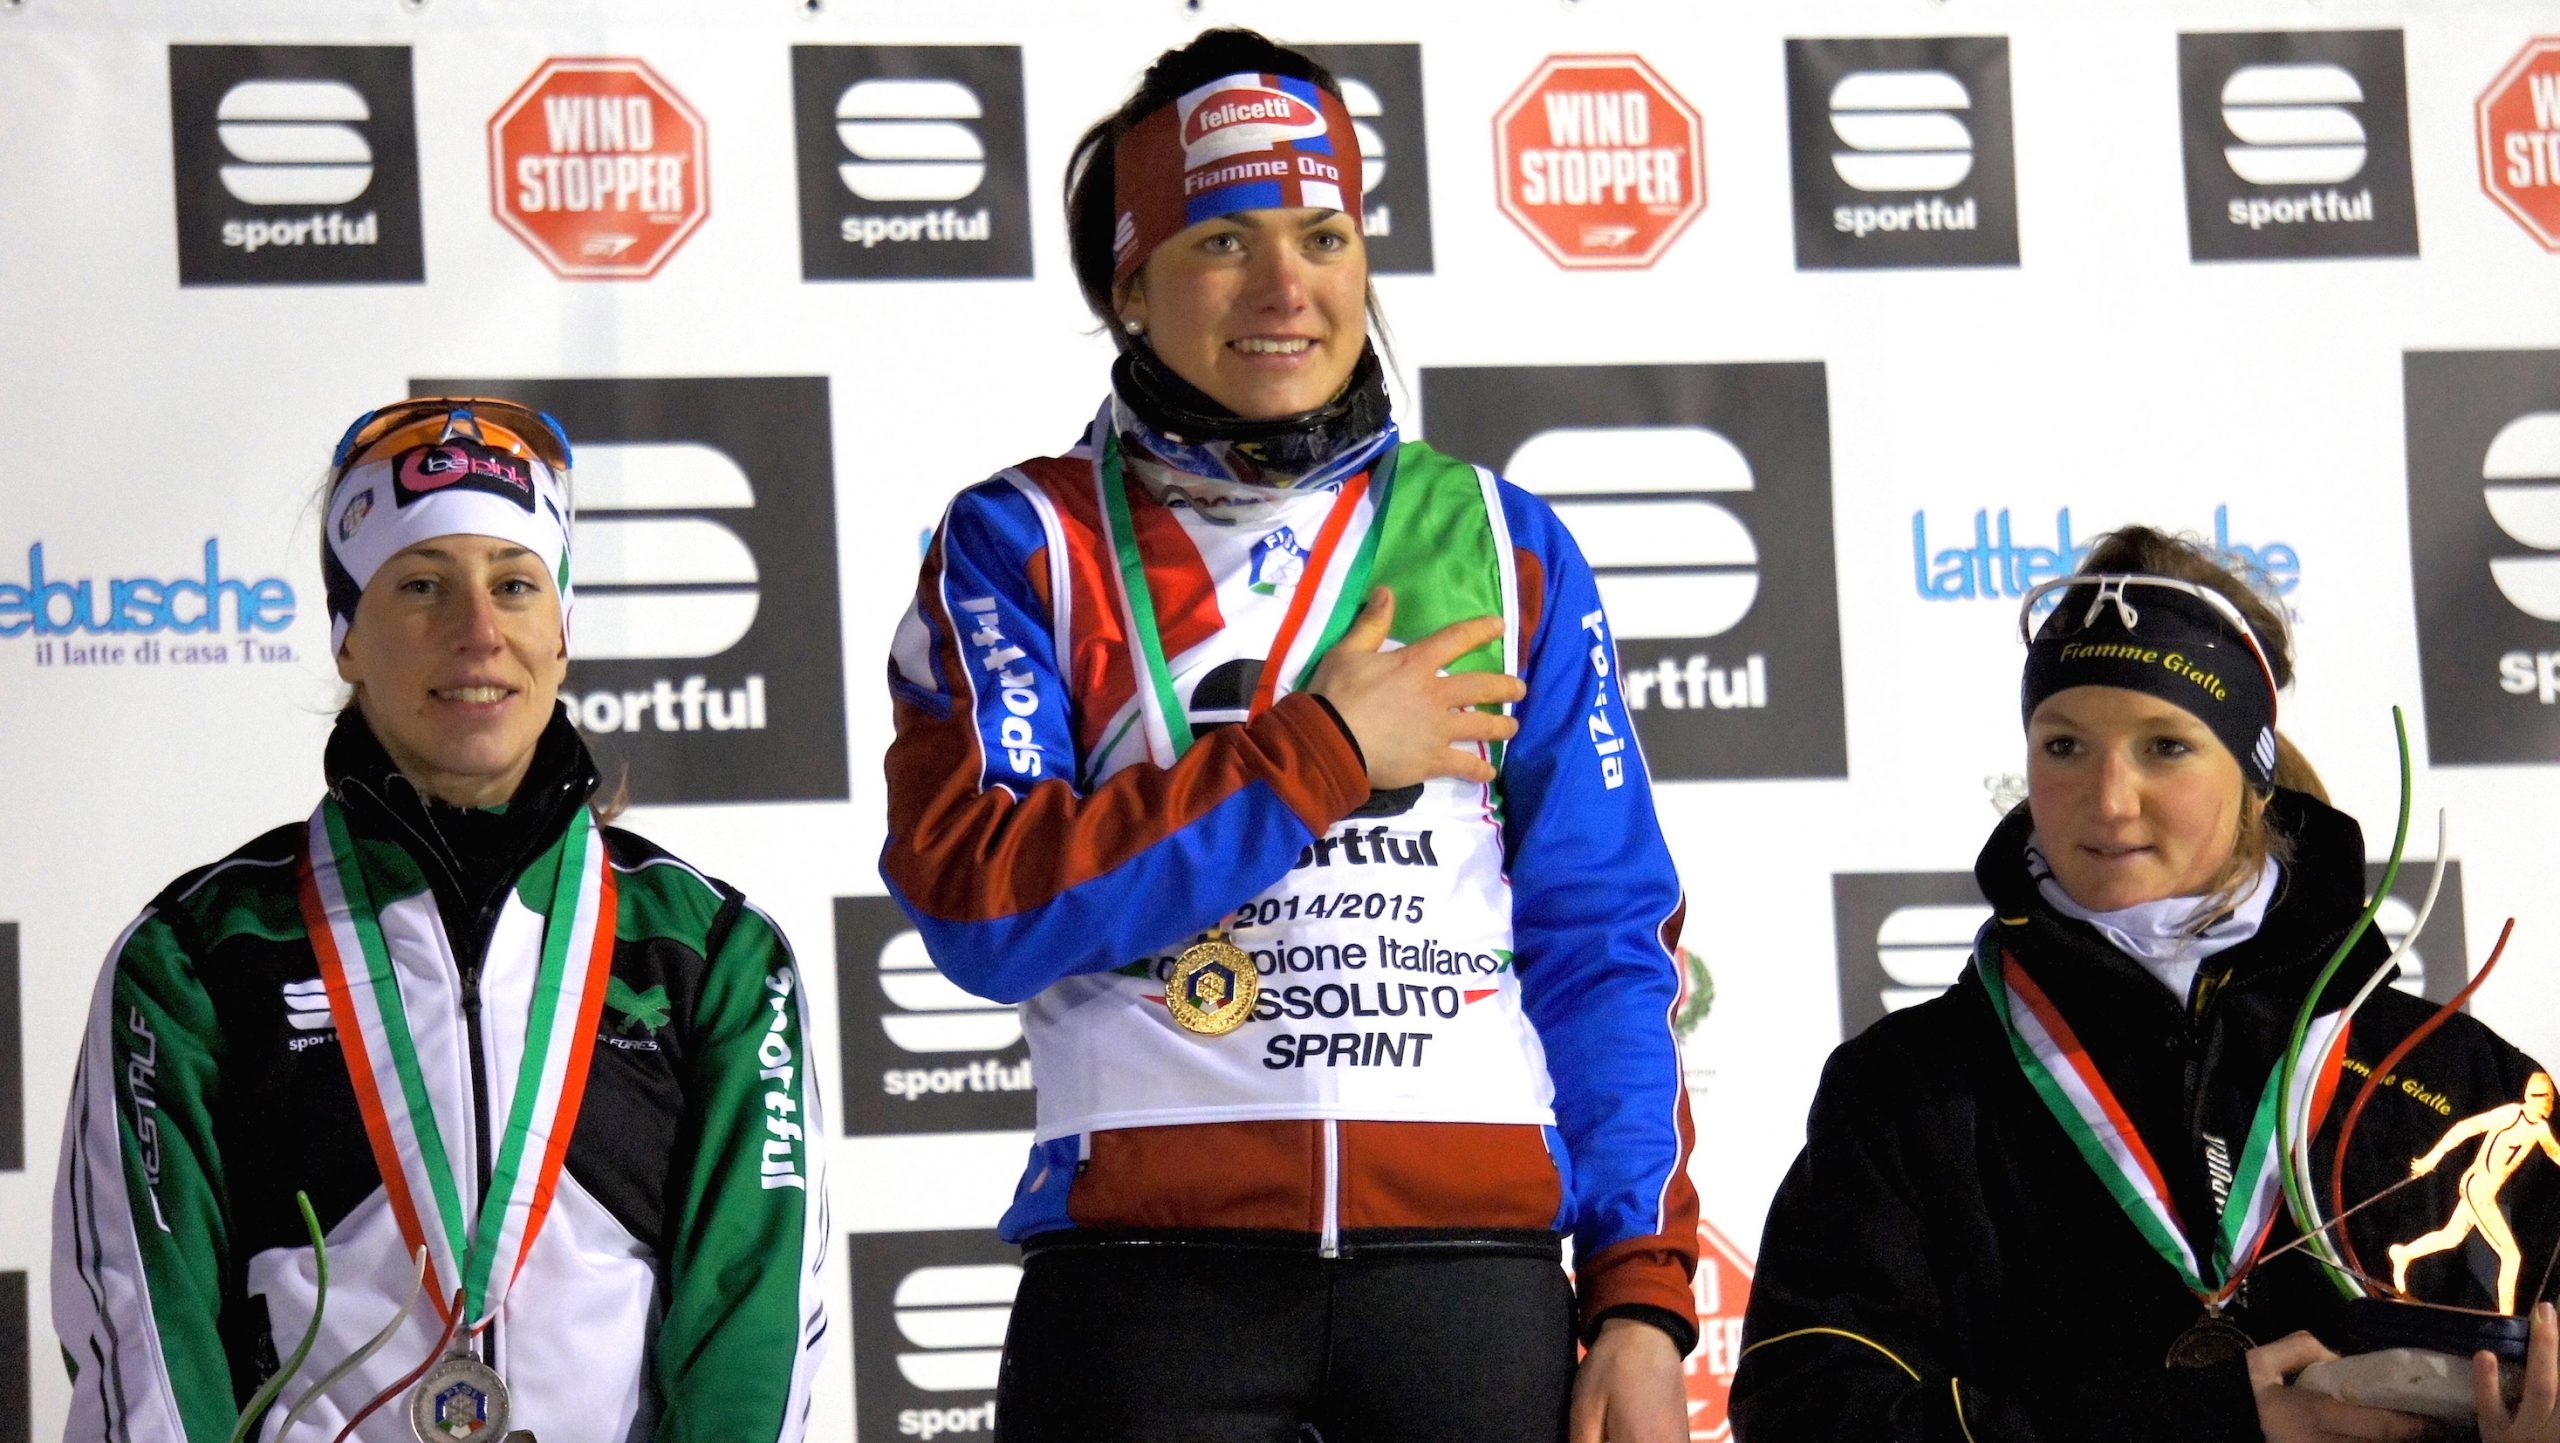 Giulia Stuerz vince i Campionati Italiani Sprint. Anche De Martin e Scardoni sul podio.